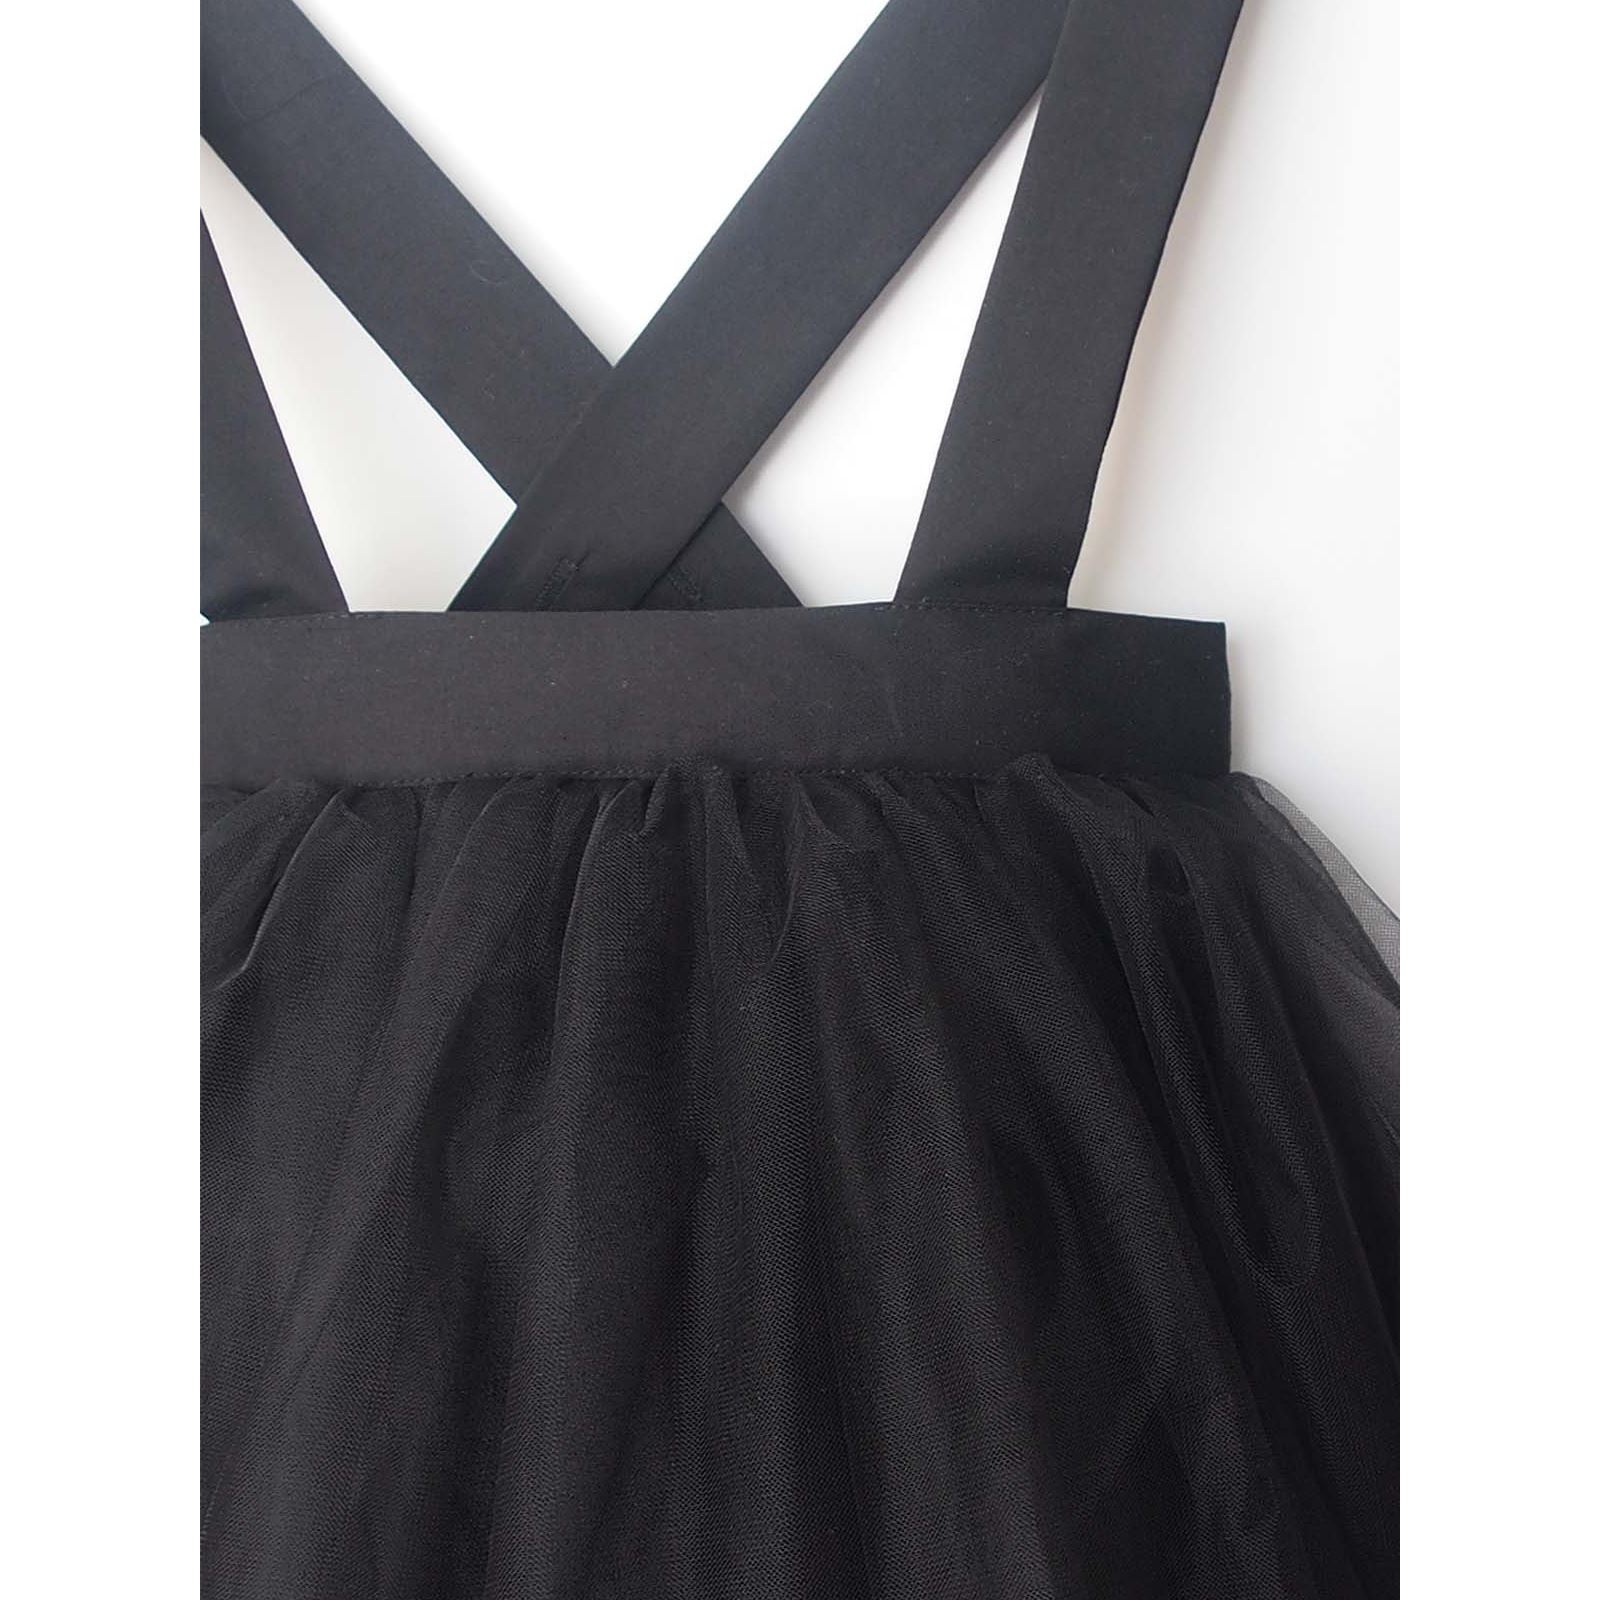 Shecco Babba Kız Çocuk Tütü Elbise Bandana Takım 1-5 Yaş Siyah